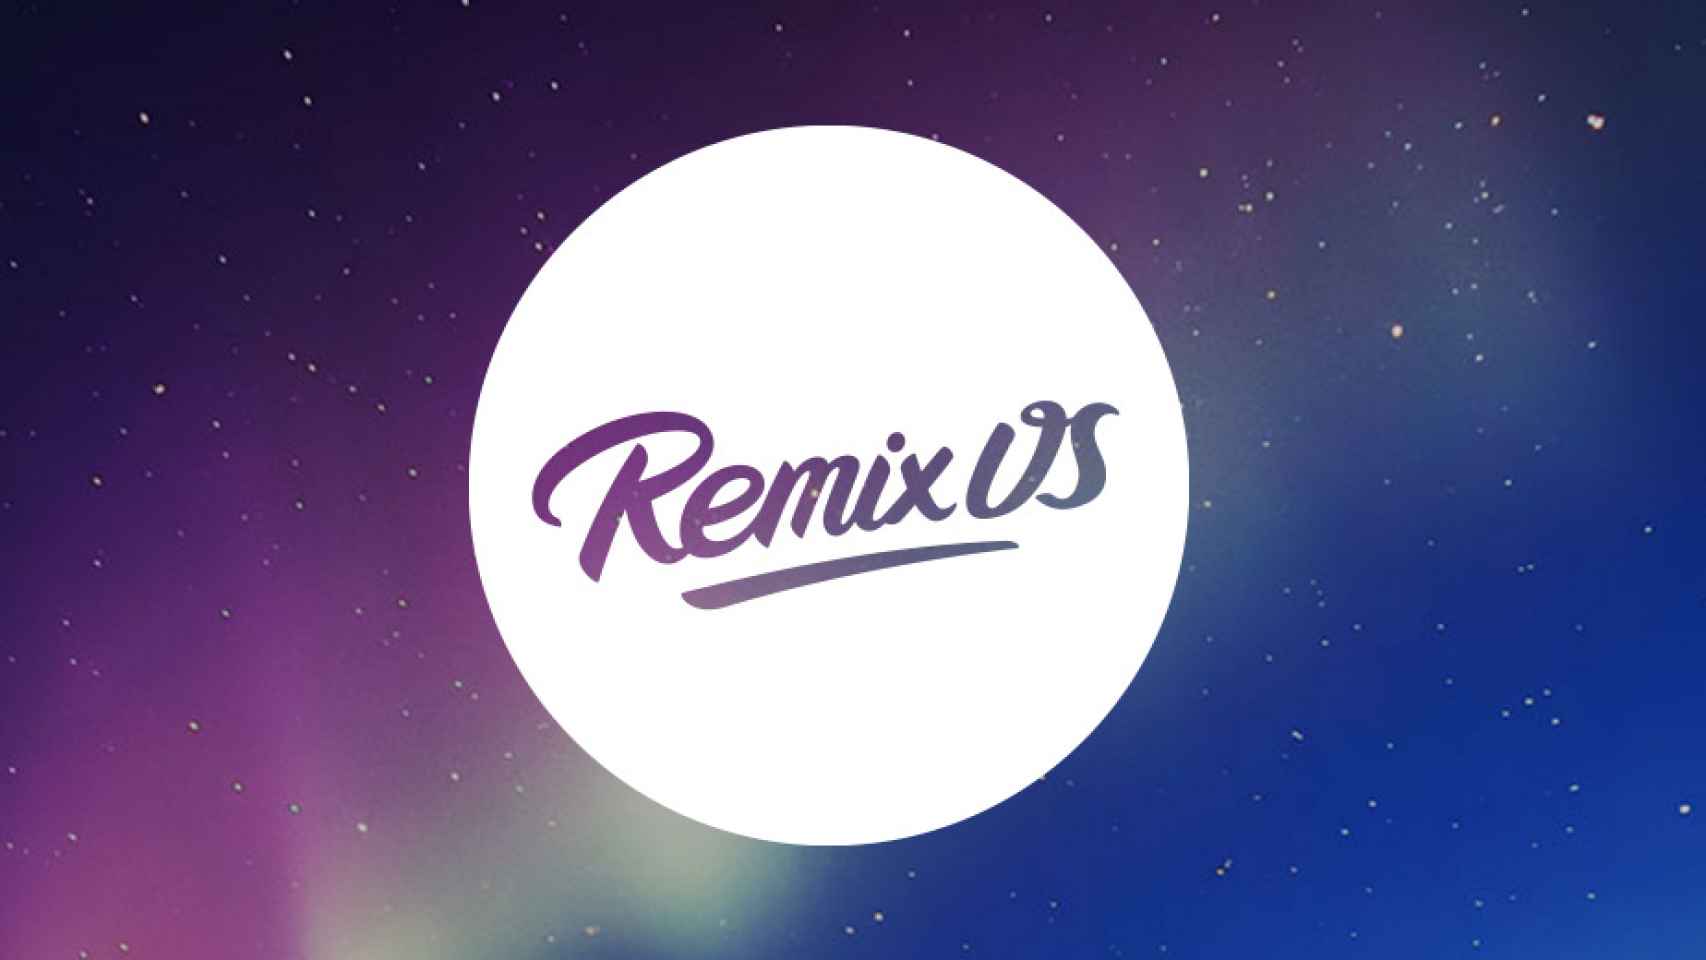 Remix OS 2.0: Análisis de la mejor versión de Android para PC